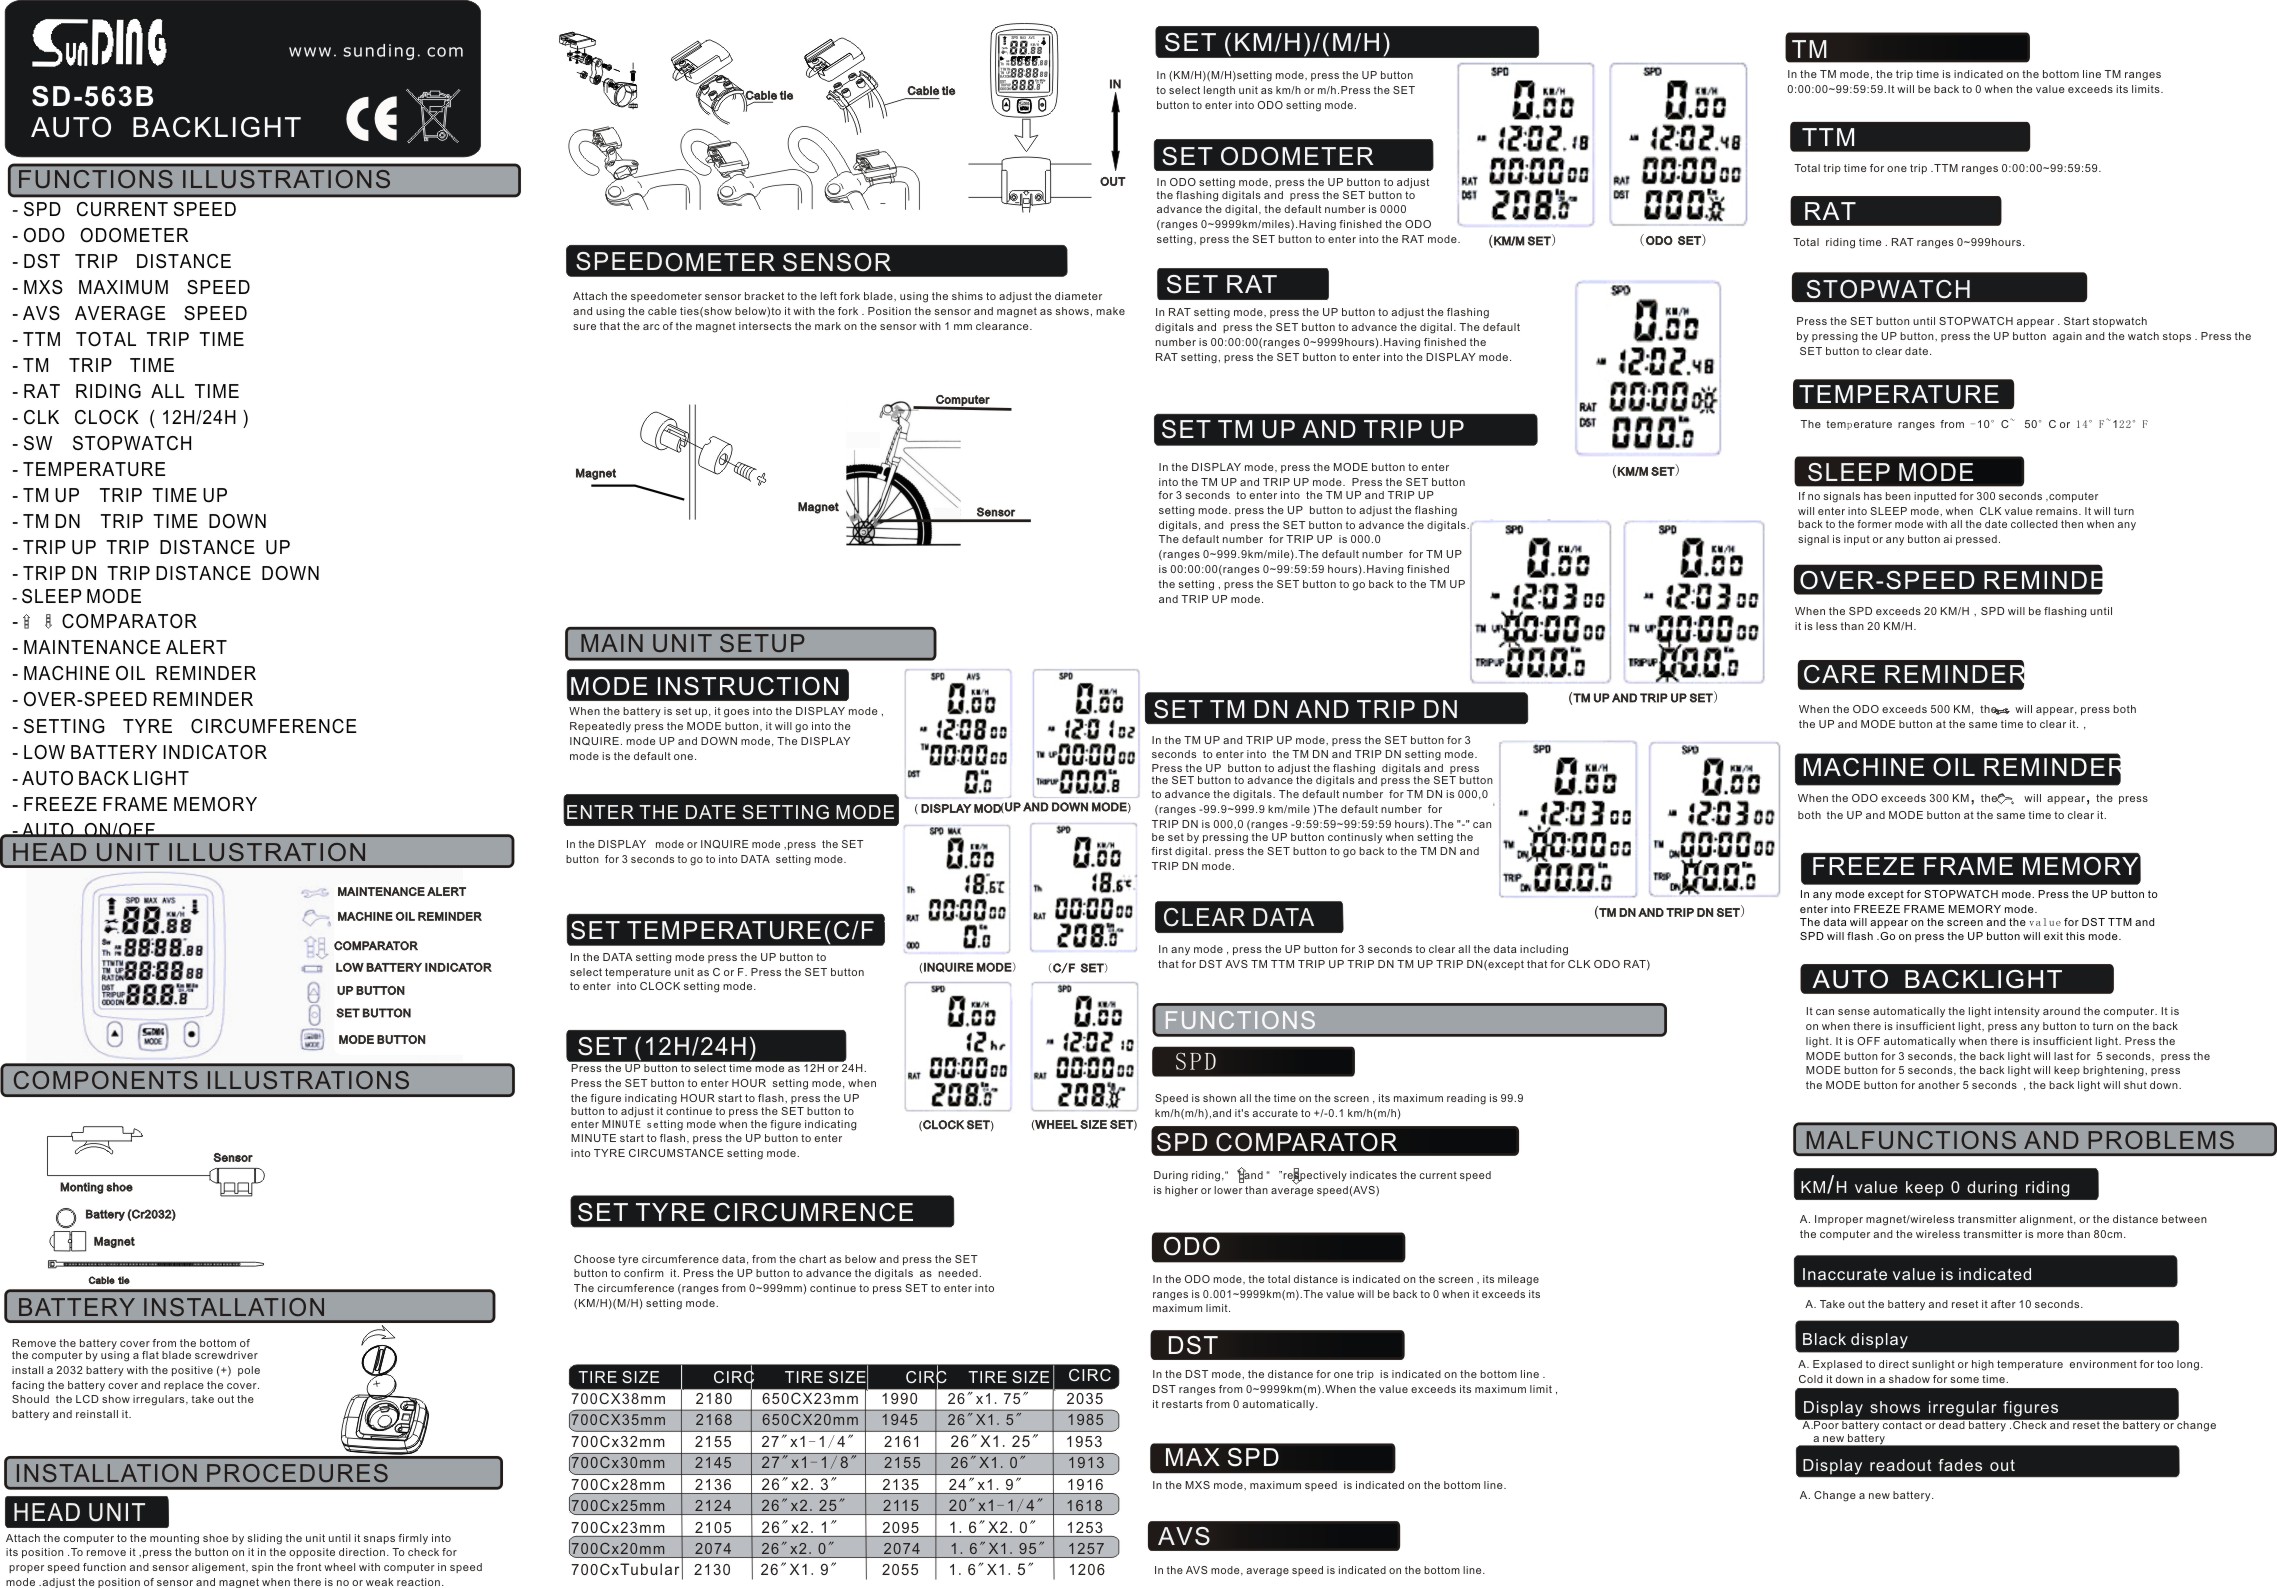 Specialized bike manual pdf